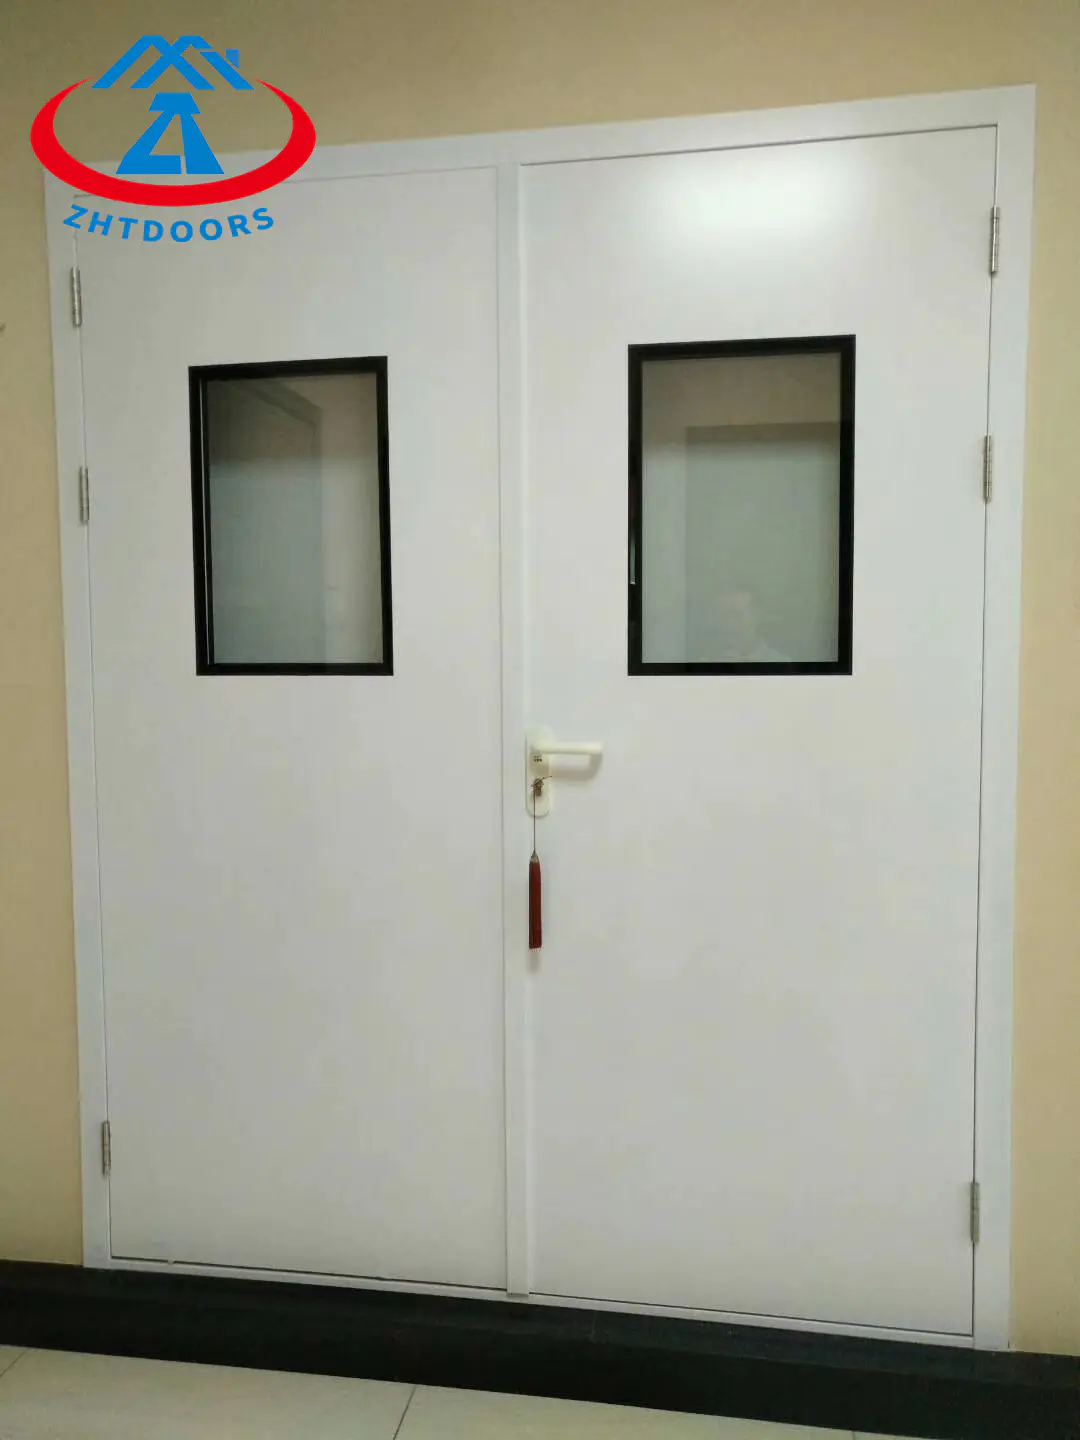 Fireproof Restaurant Soundproof Iron Steel Glass DoorsAS Fireproof Door